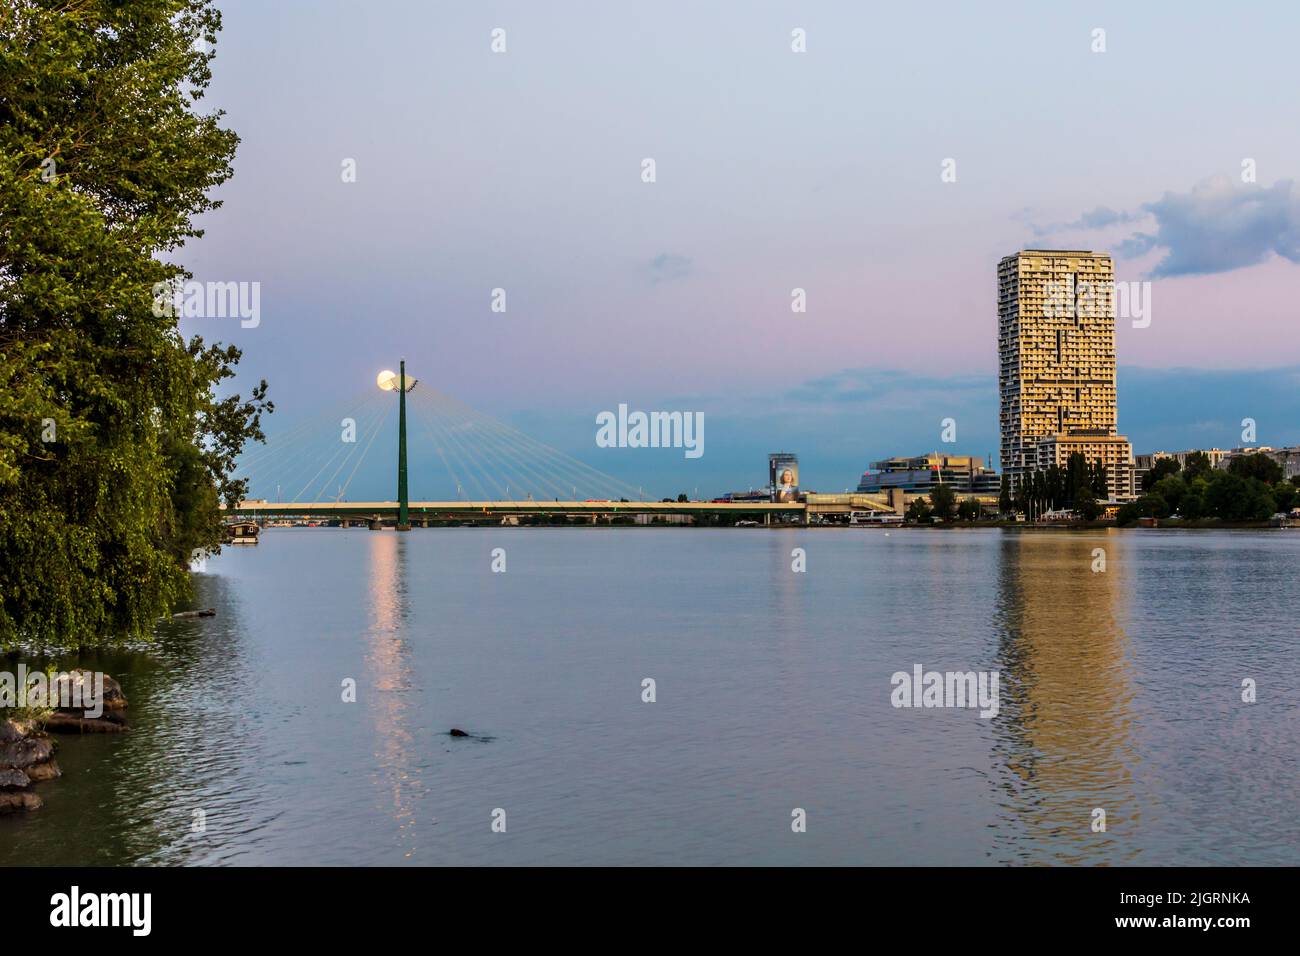 Wien, Vienne: rivière Donau (Danube), tour de la Marina, pont de métro Donaustadtbrücke, pleine lune, vue de l'île de Donauinsel, nage avec le castor Banque D'Images